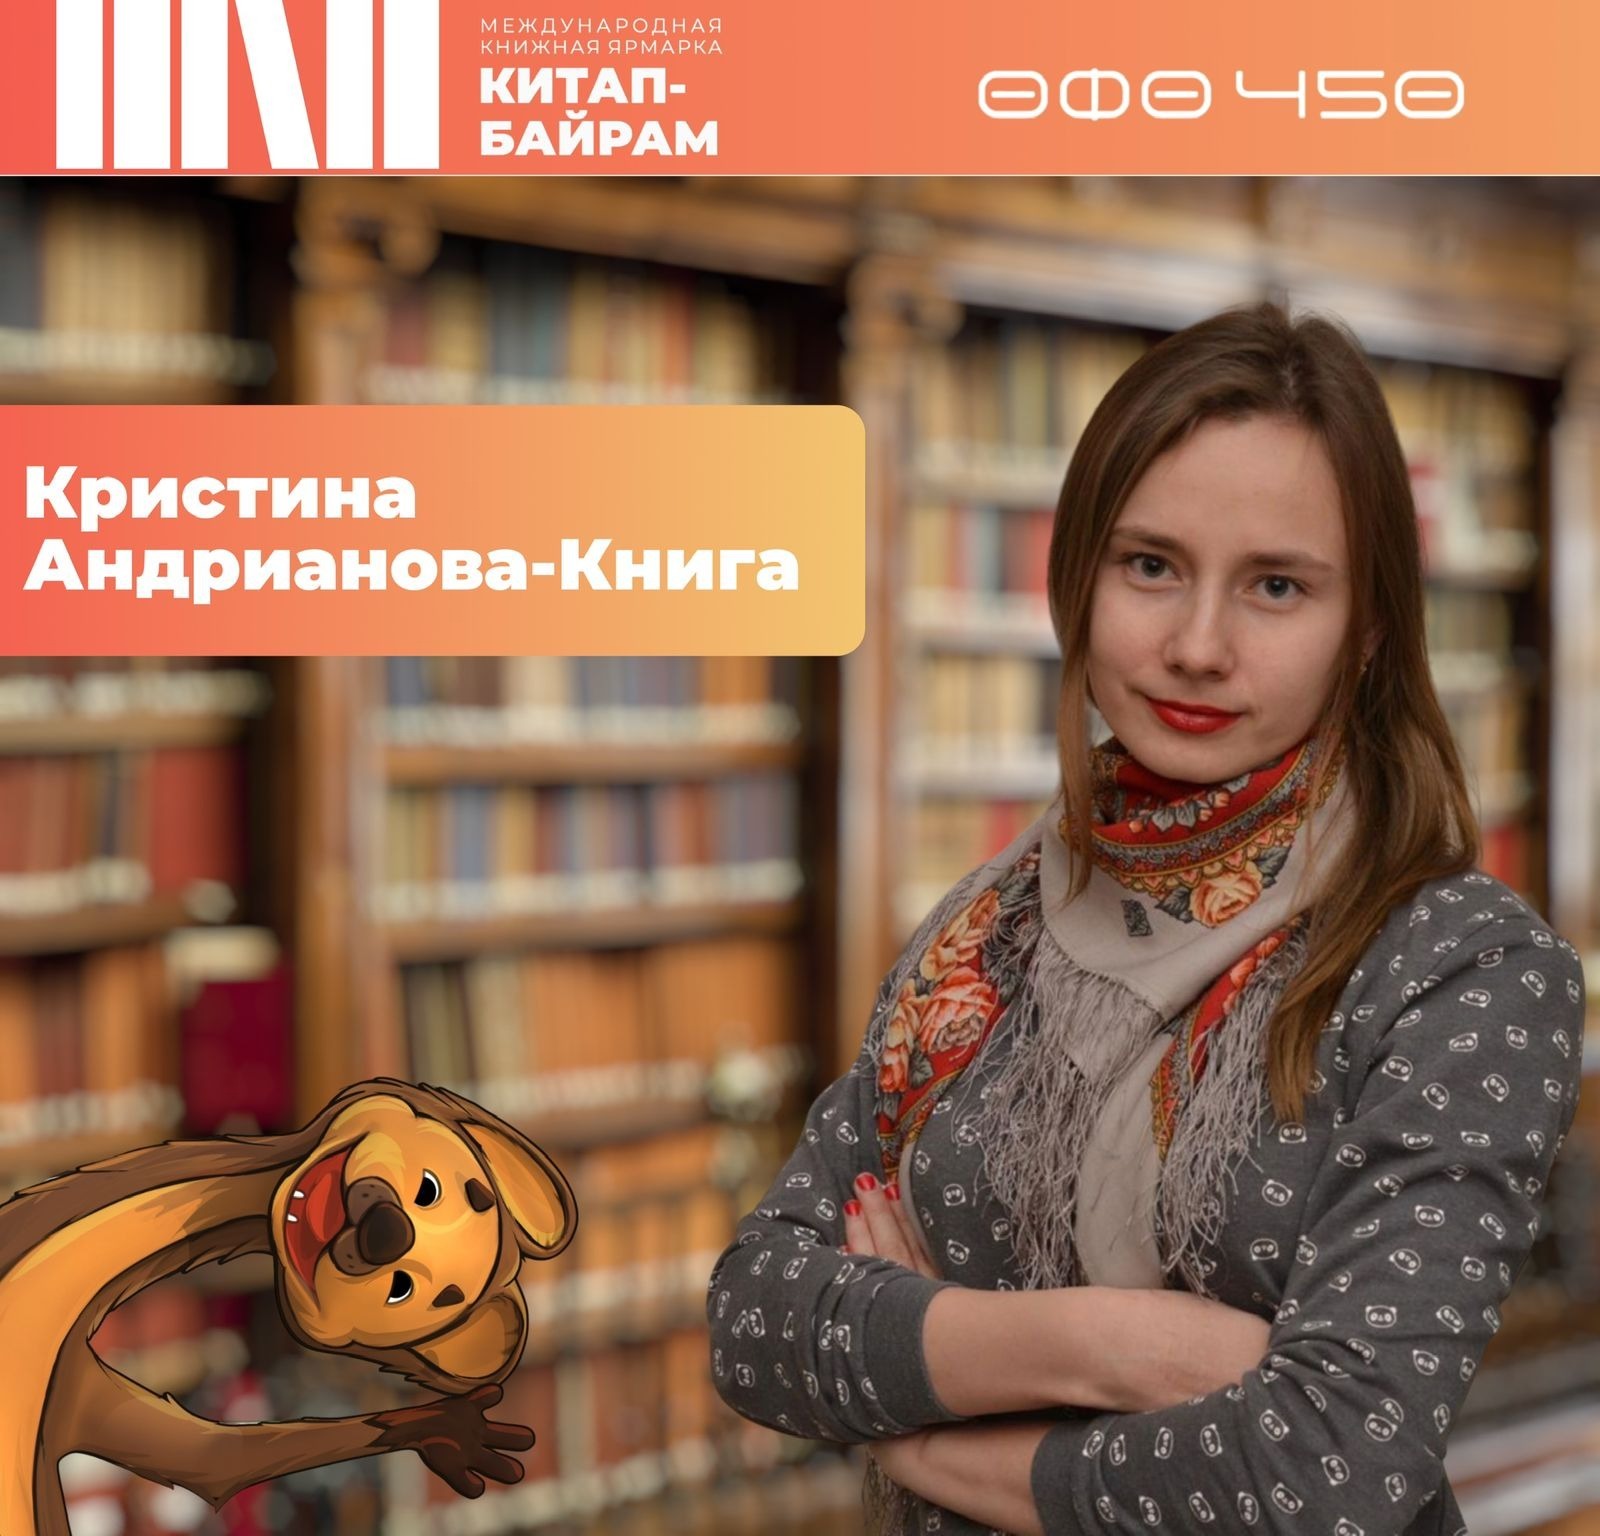 Кристина Андрианова-Книга: Желаю каждому найти на нашей ярмарке свою книгу года